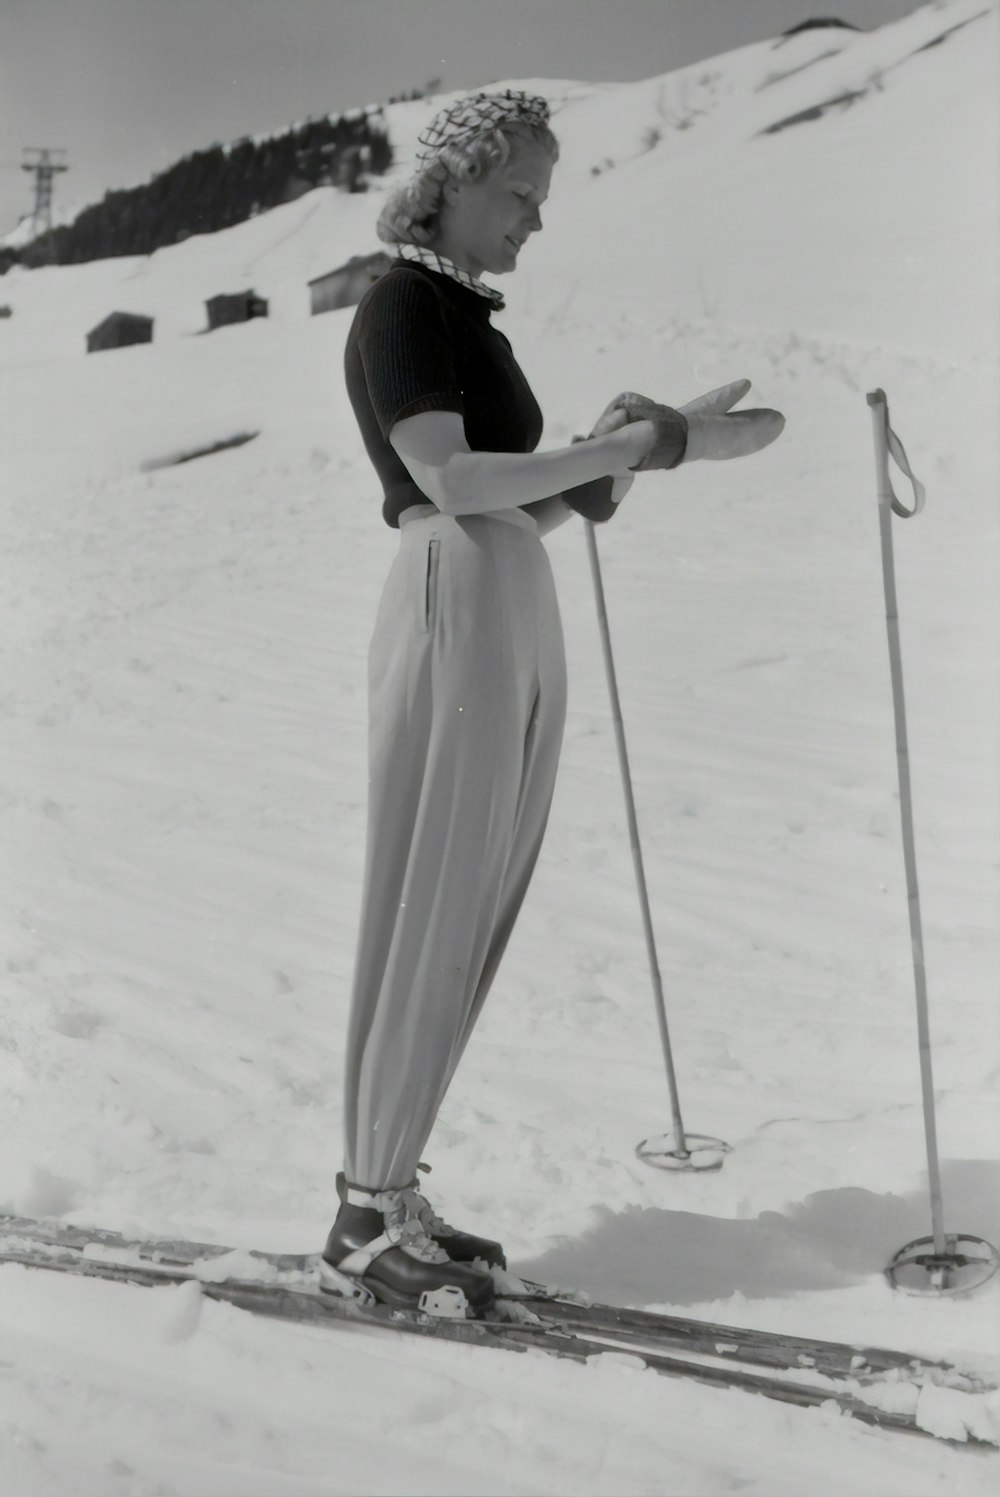 fotografia em escala de cinza da mulher usando snowboard